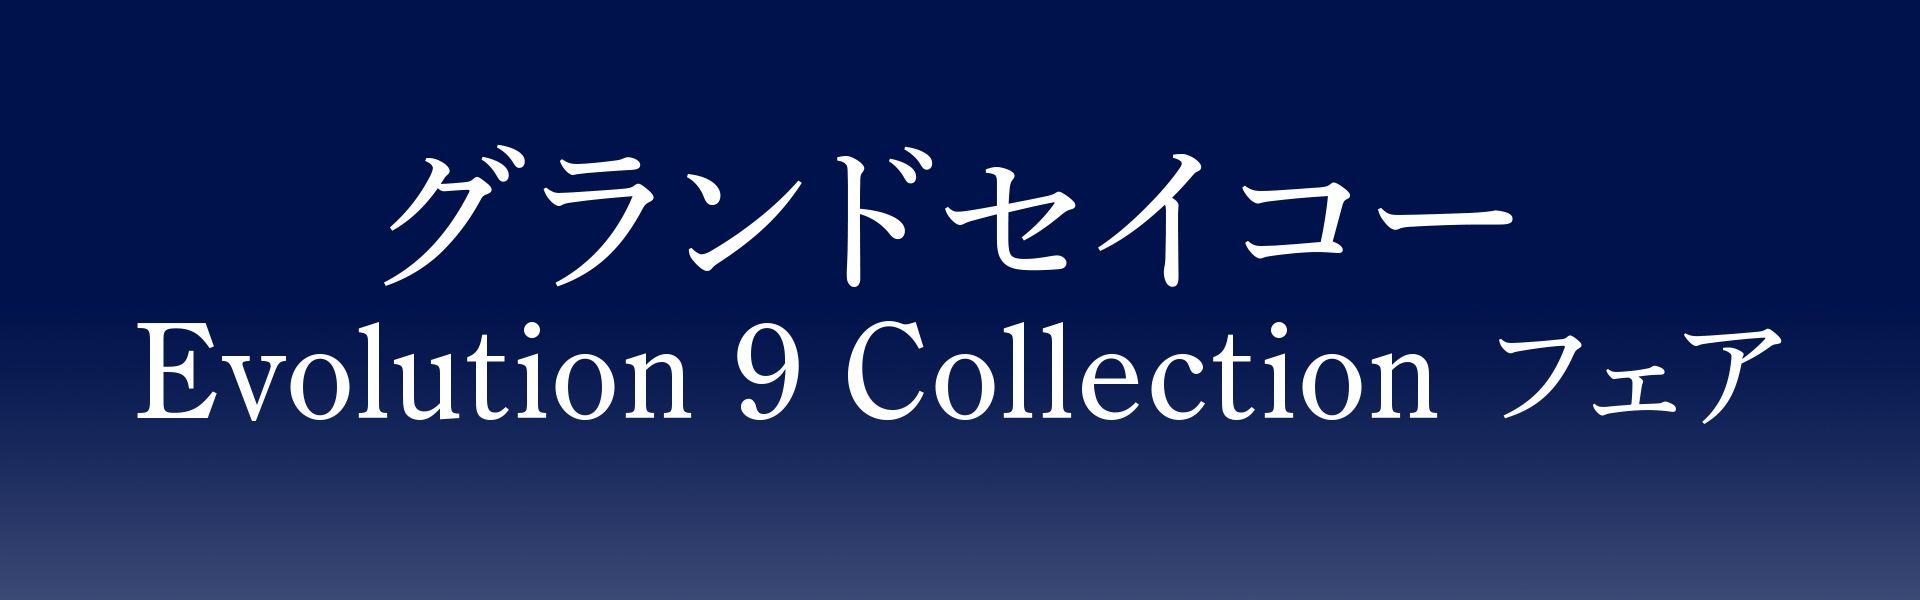 グランドセイコー Evolution 9 Collection フェア
